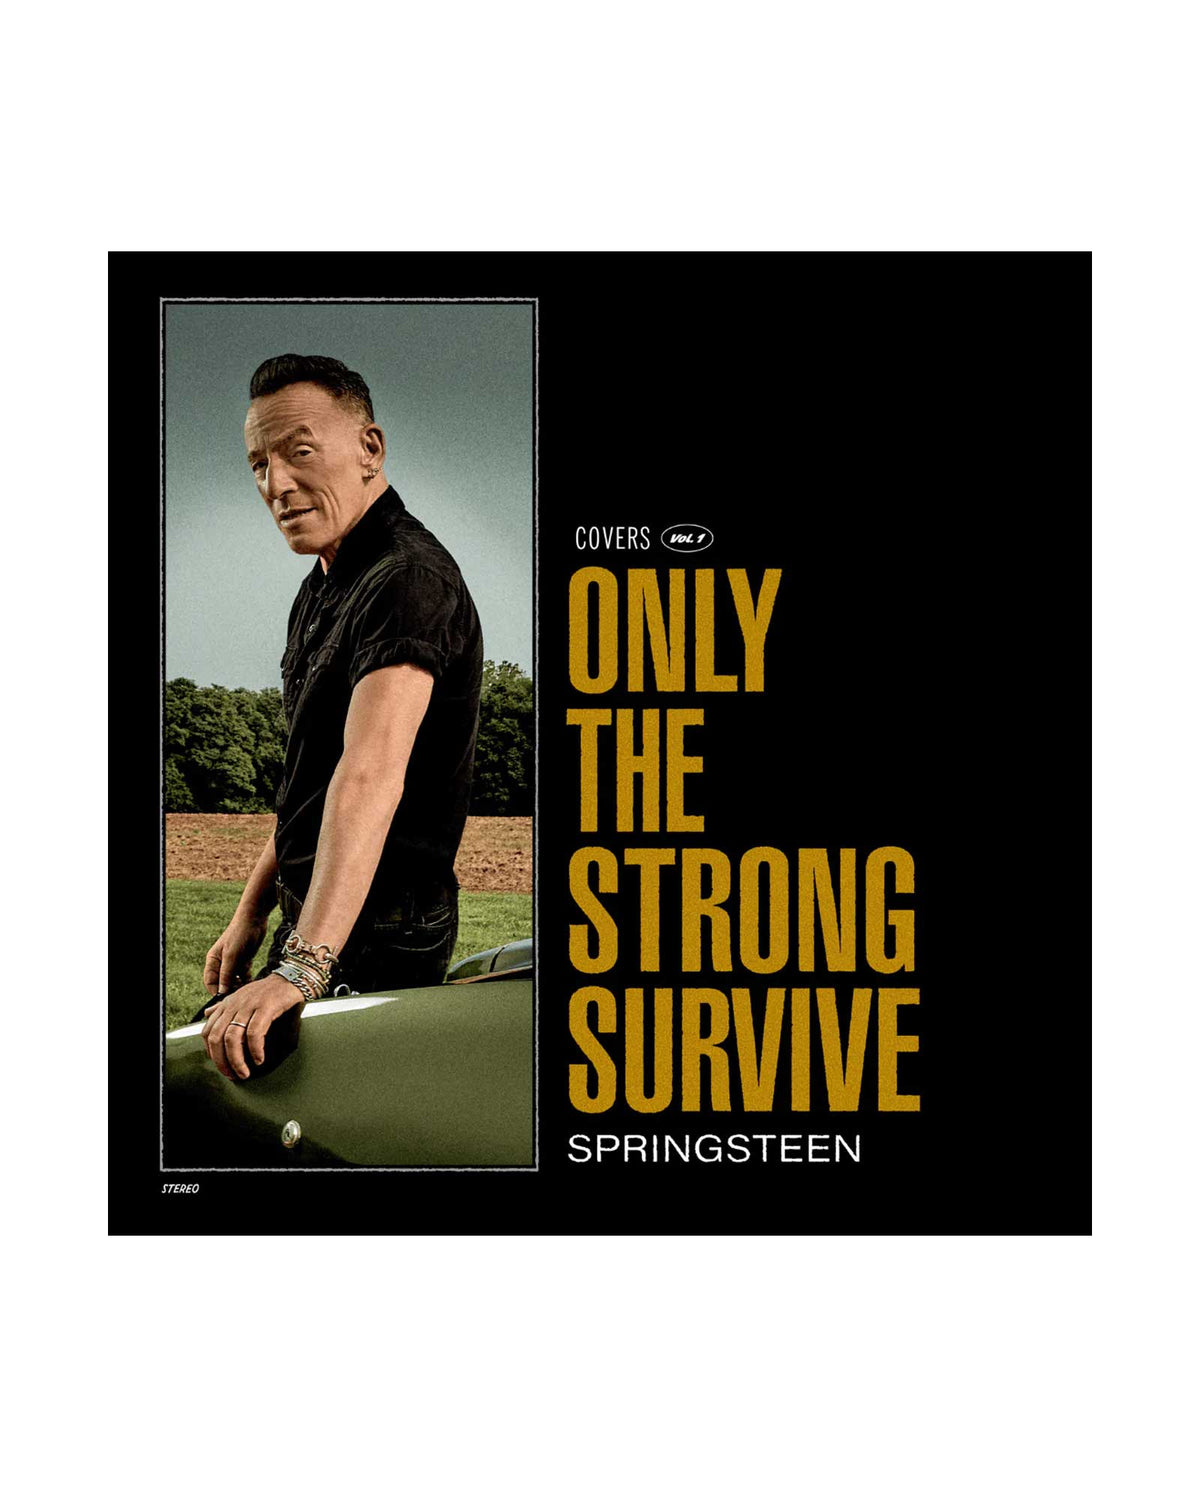 Bruce Springsteen - CD "Only the strong survive" - Rocktud - Rocktud